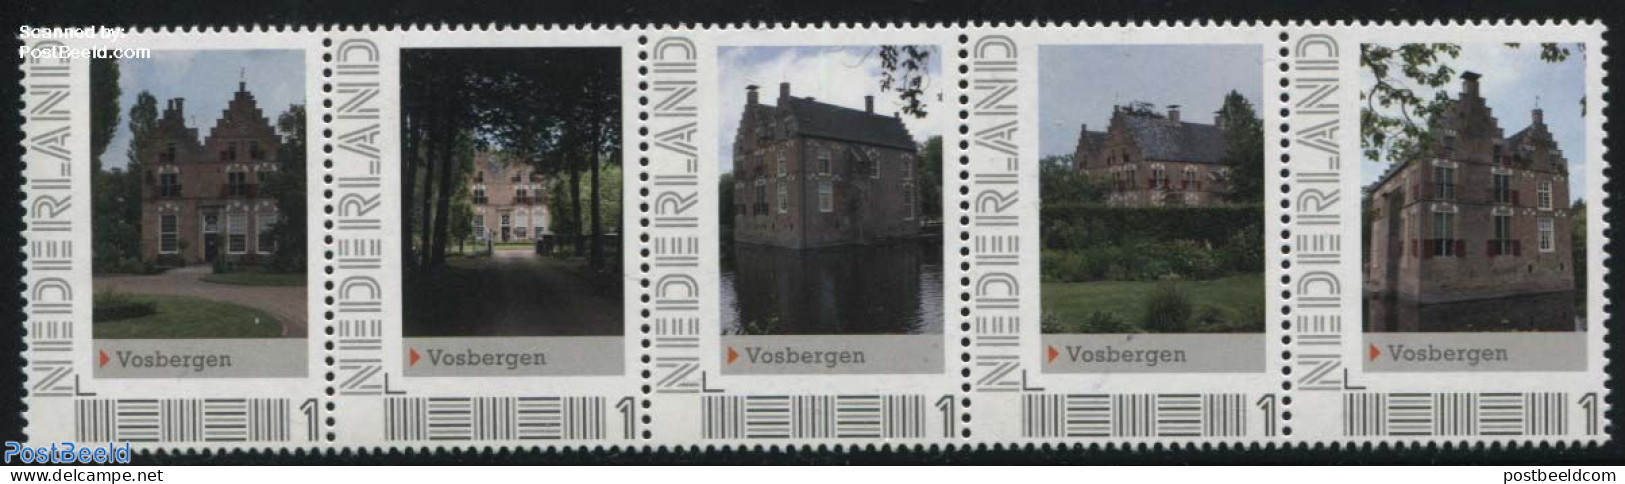 Netherlands - Personal Stamps TNT/PNL 2012 Vosbergen 5v [::::], Mint NH, Castles & Fortifications - Castles